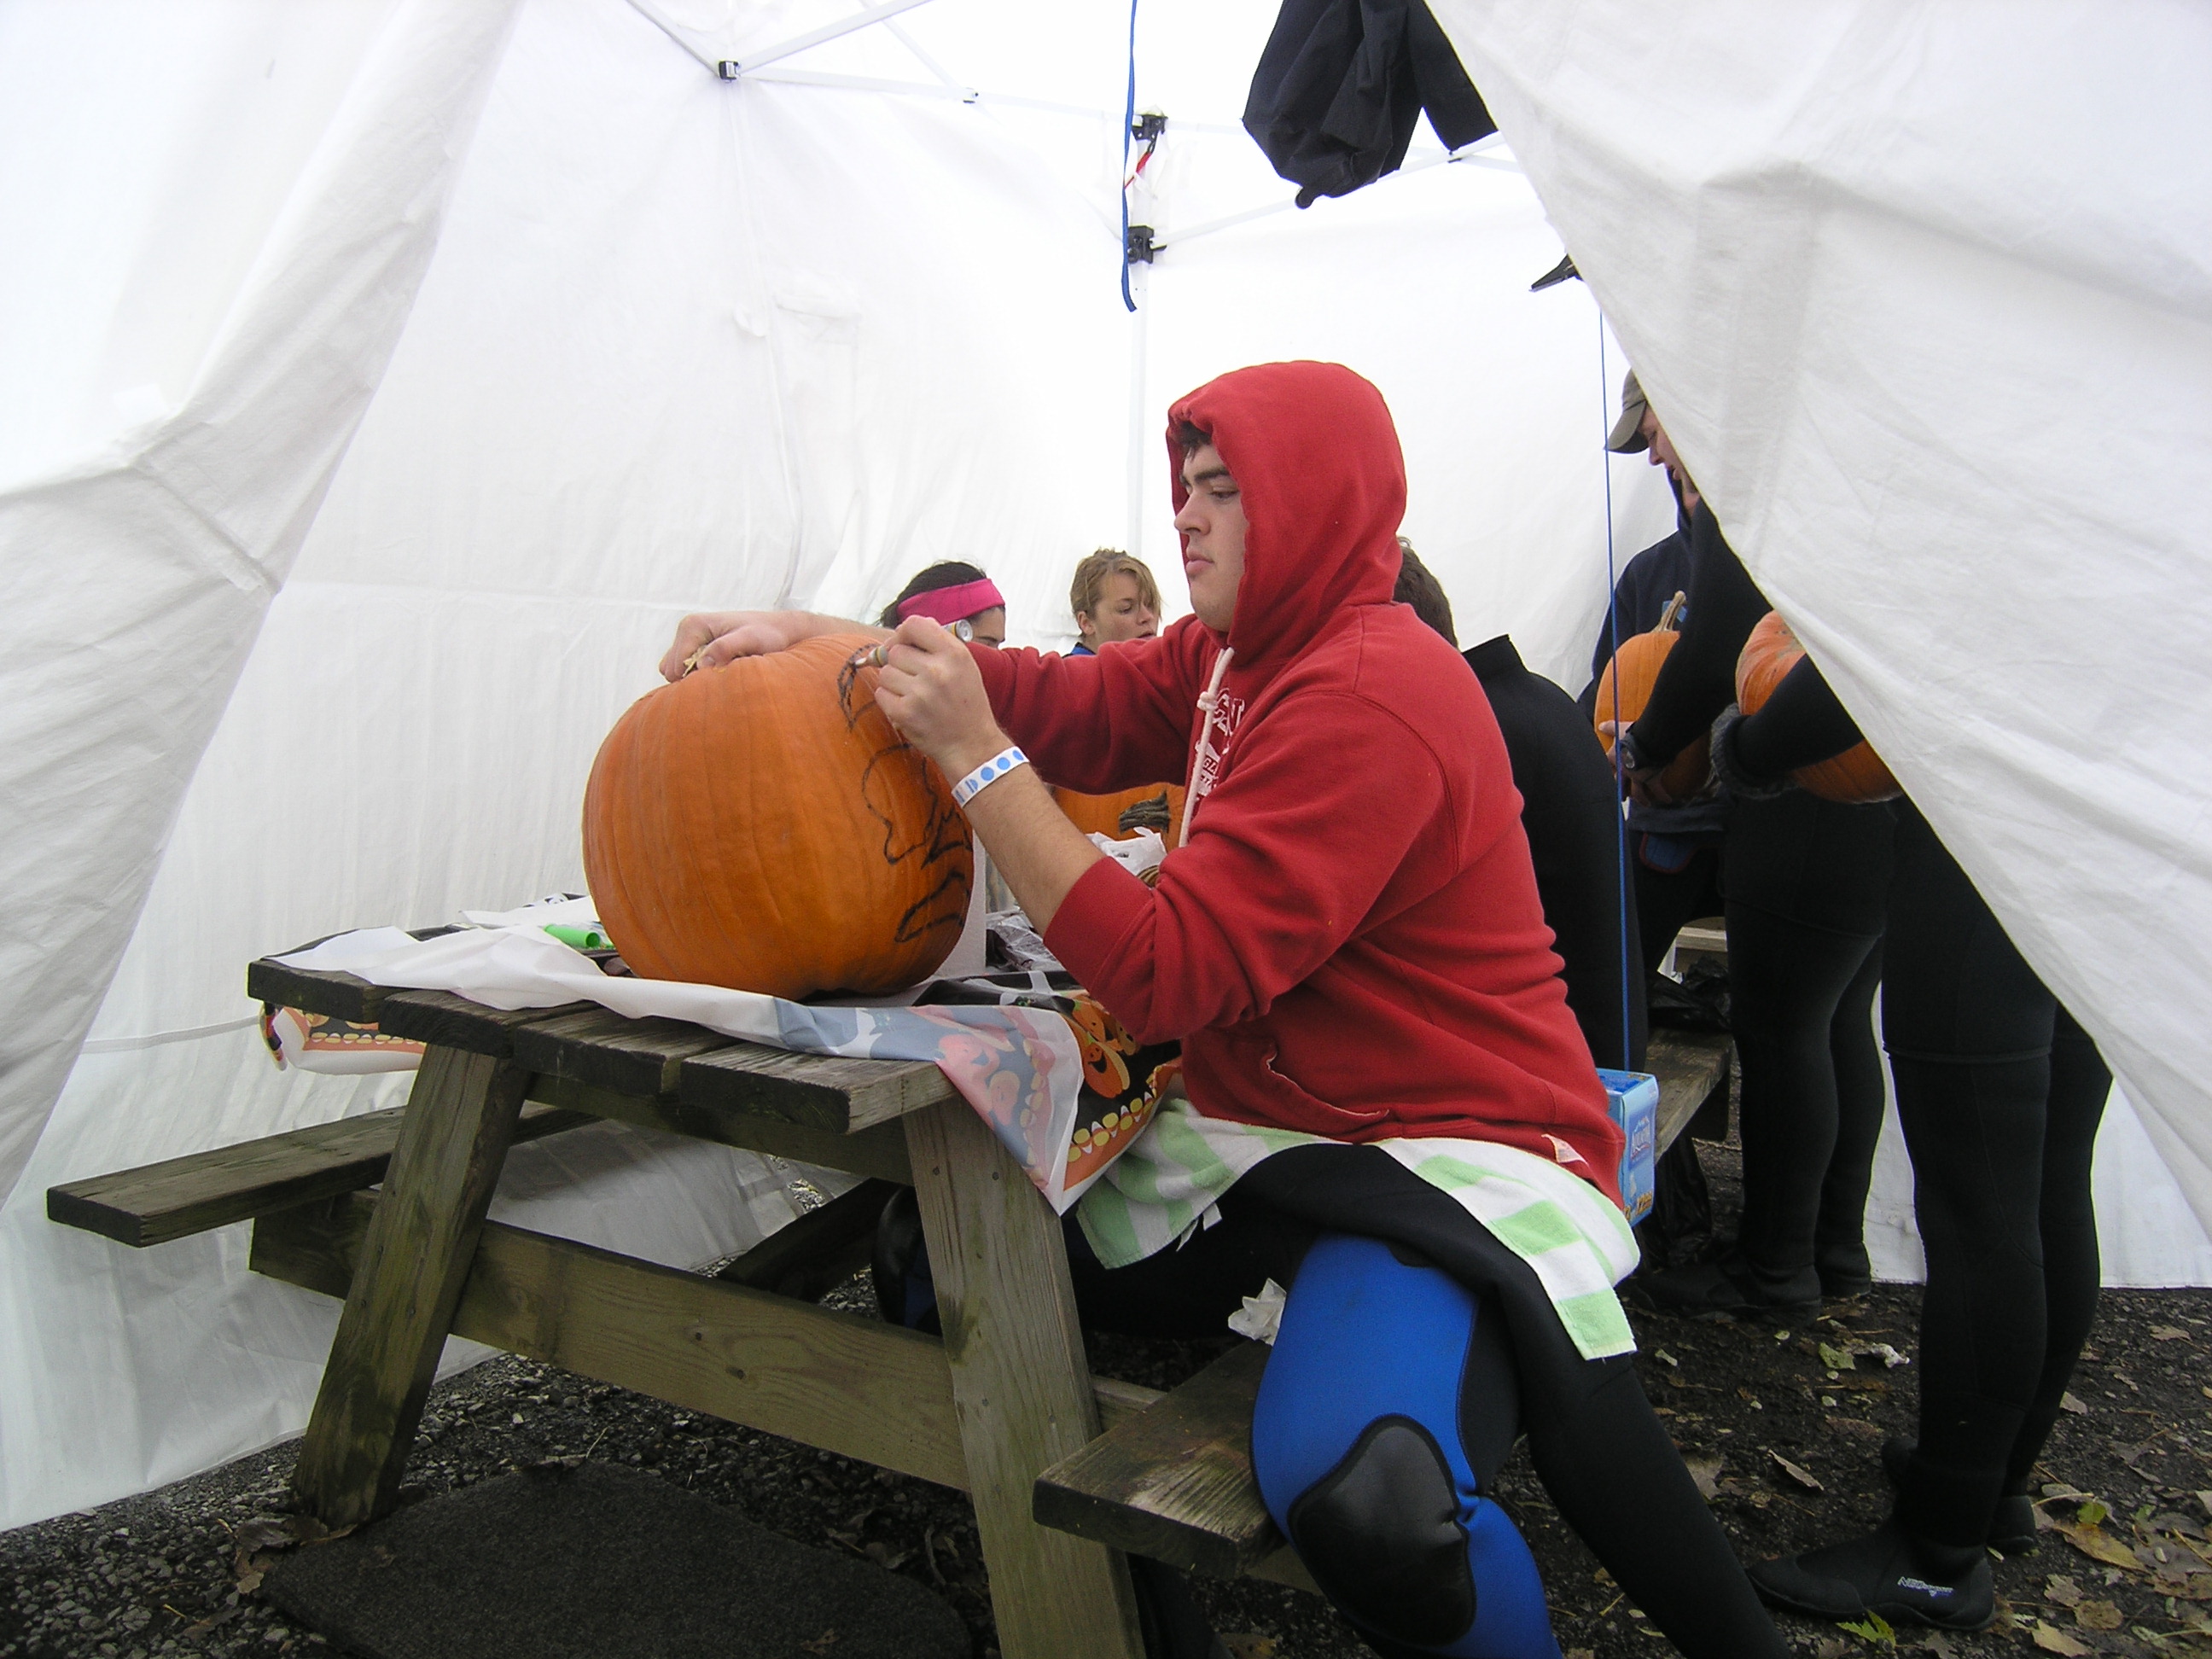 Adam prepping the giant pumpkin